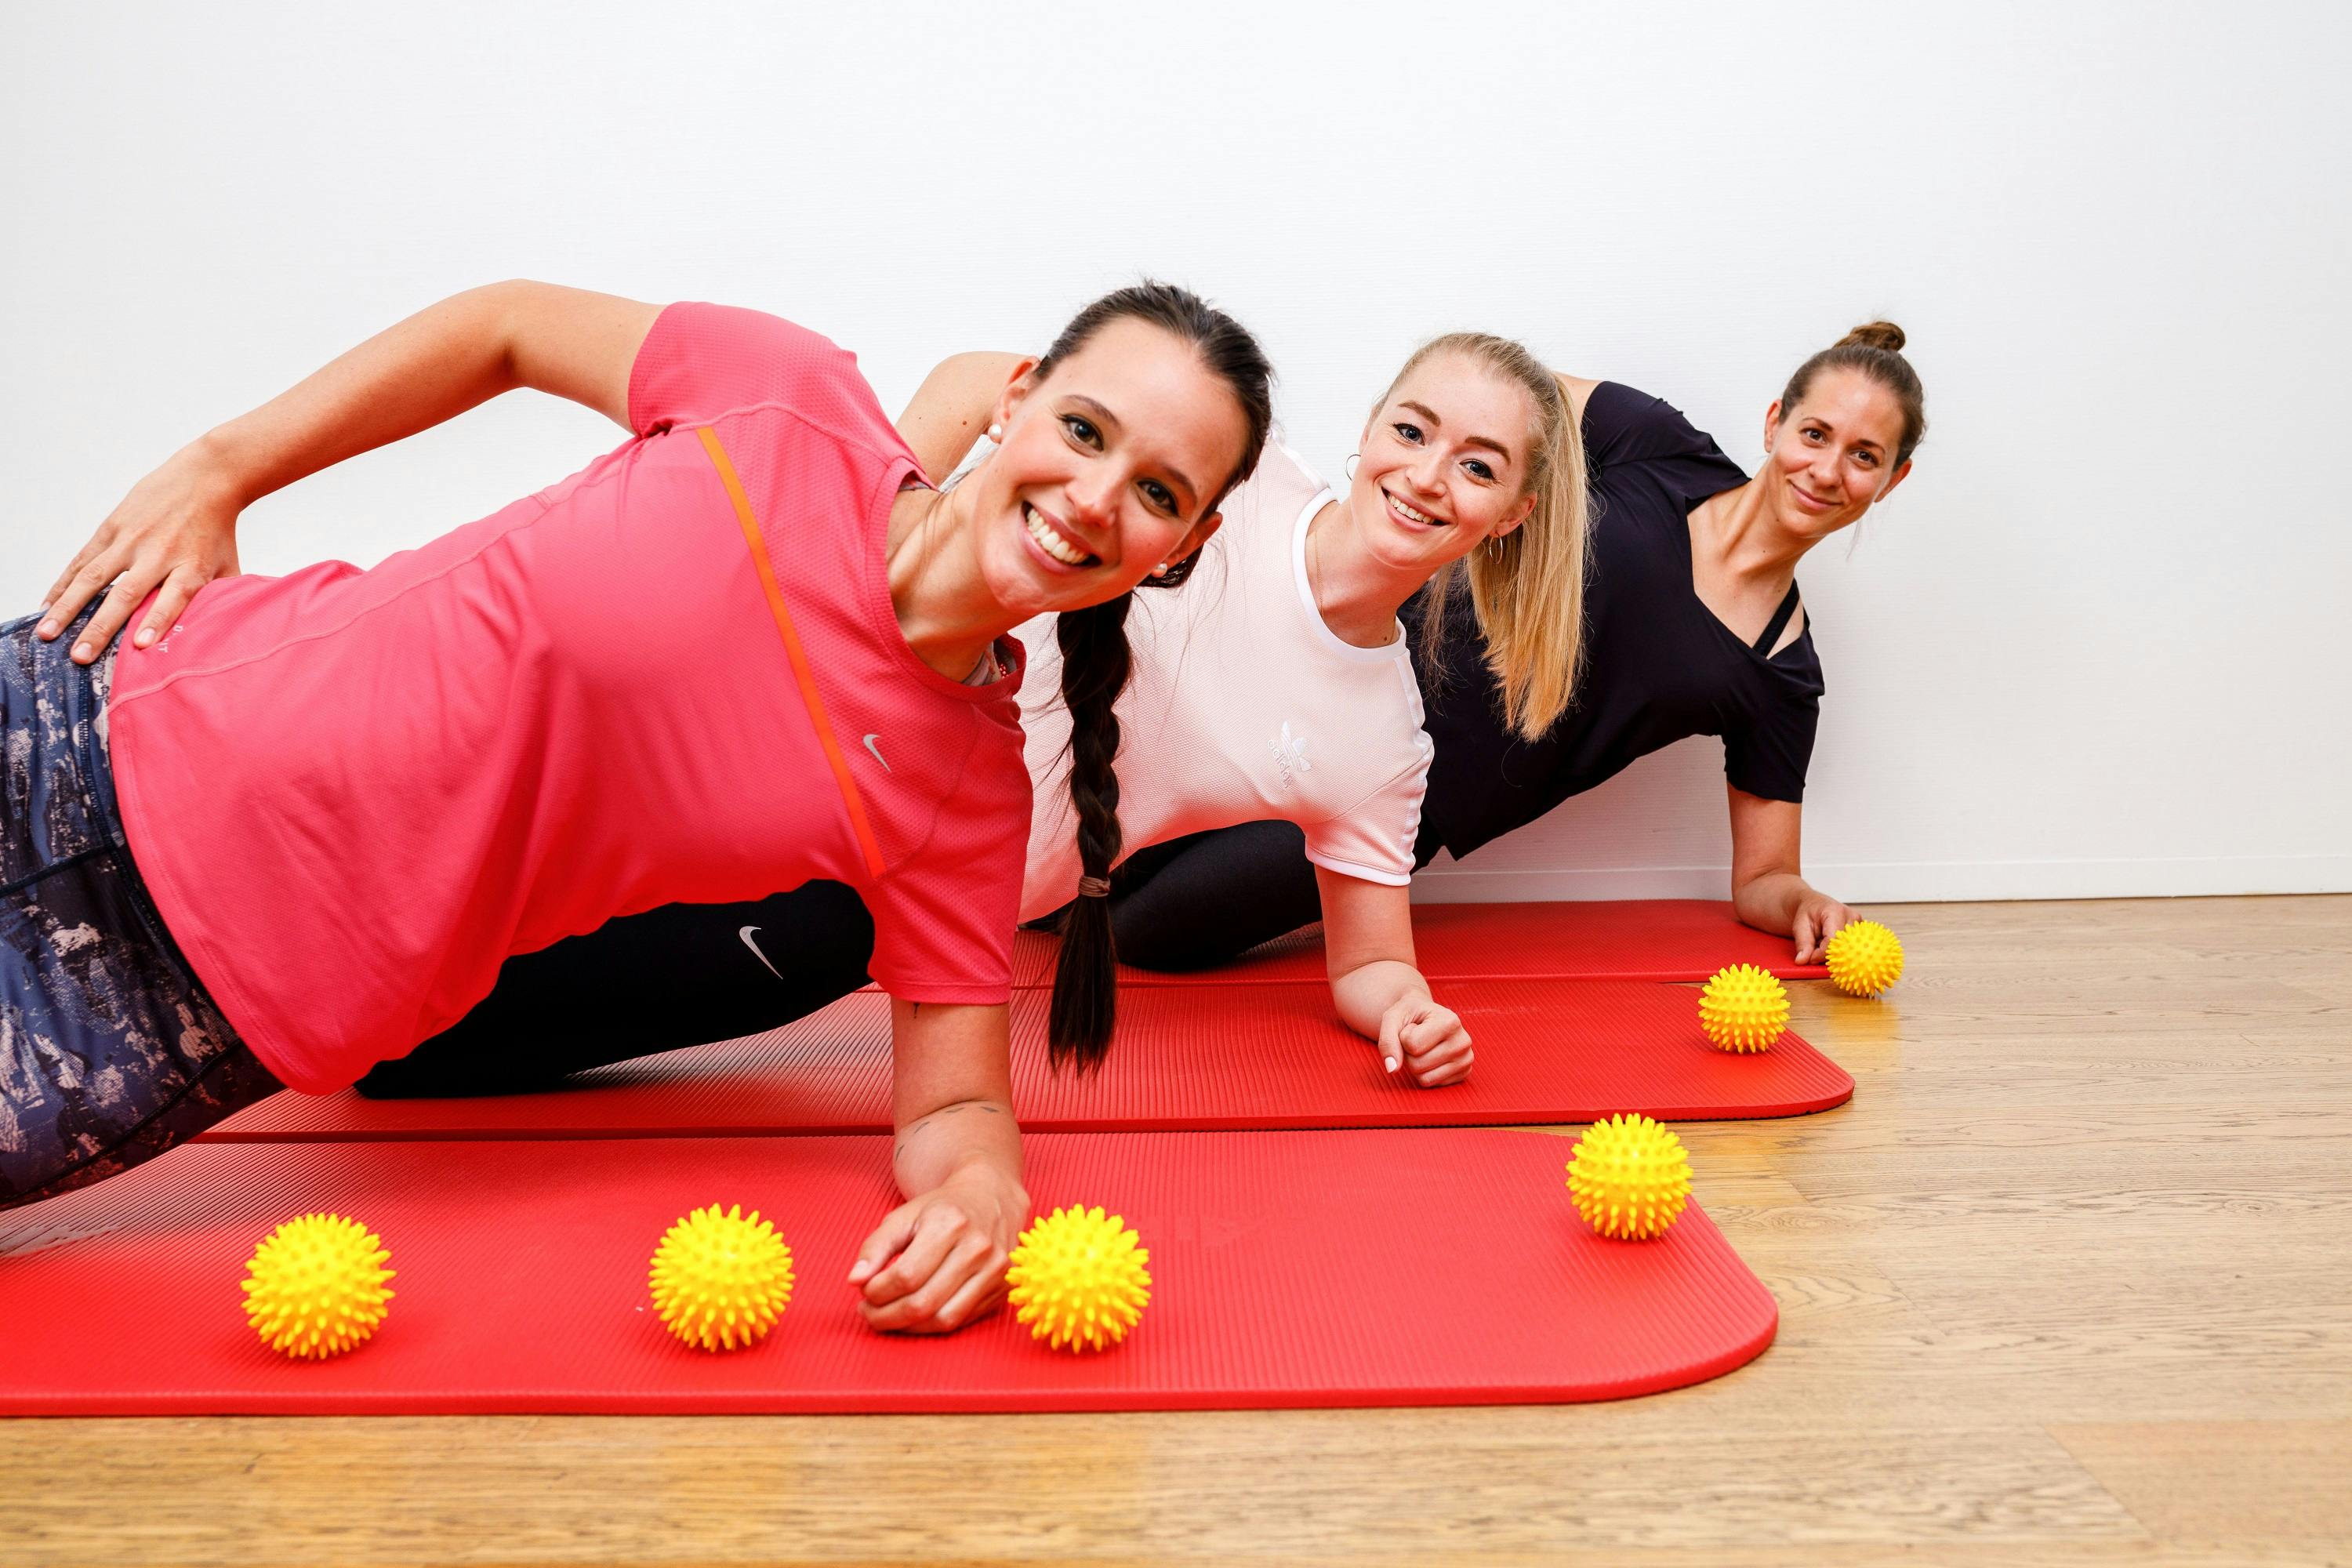 Drei lächelnde Frauen machen Plankenübungen auf roten Fitnessmatten mit gelben Massagebällen.